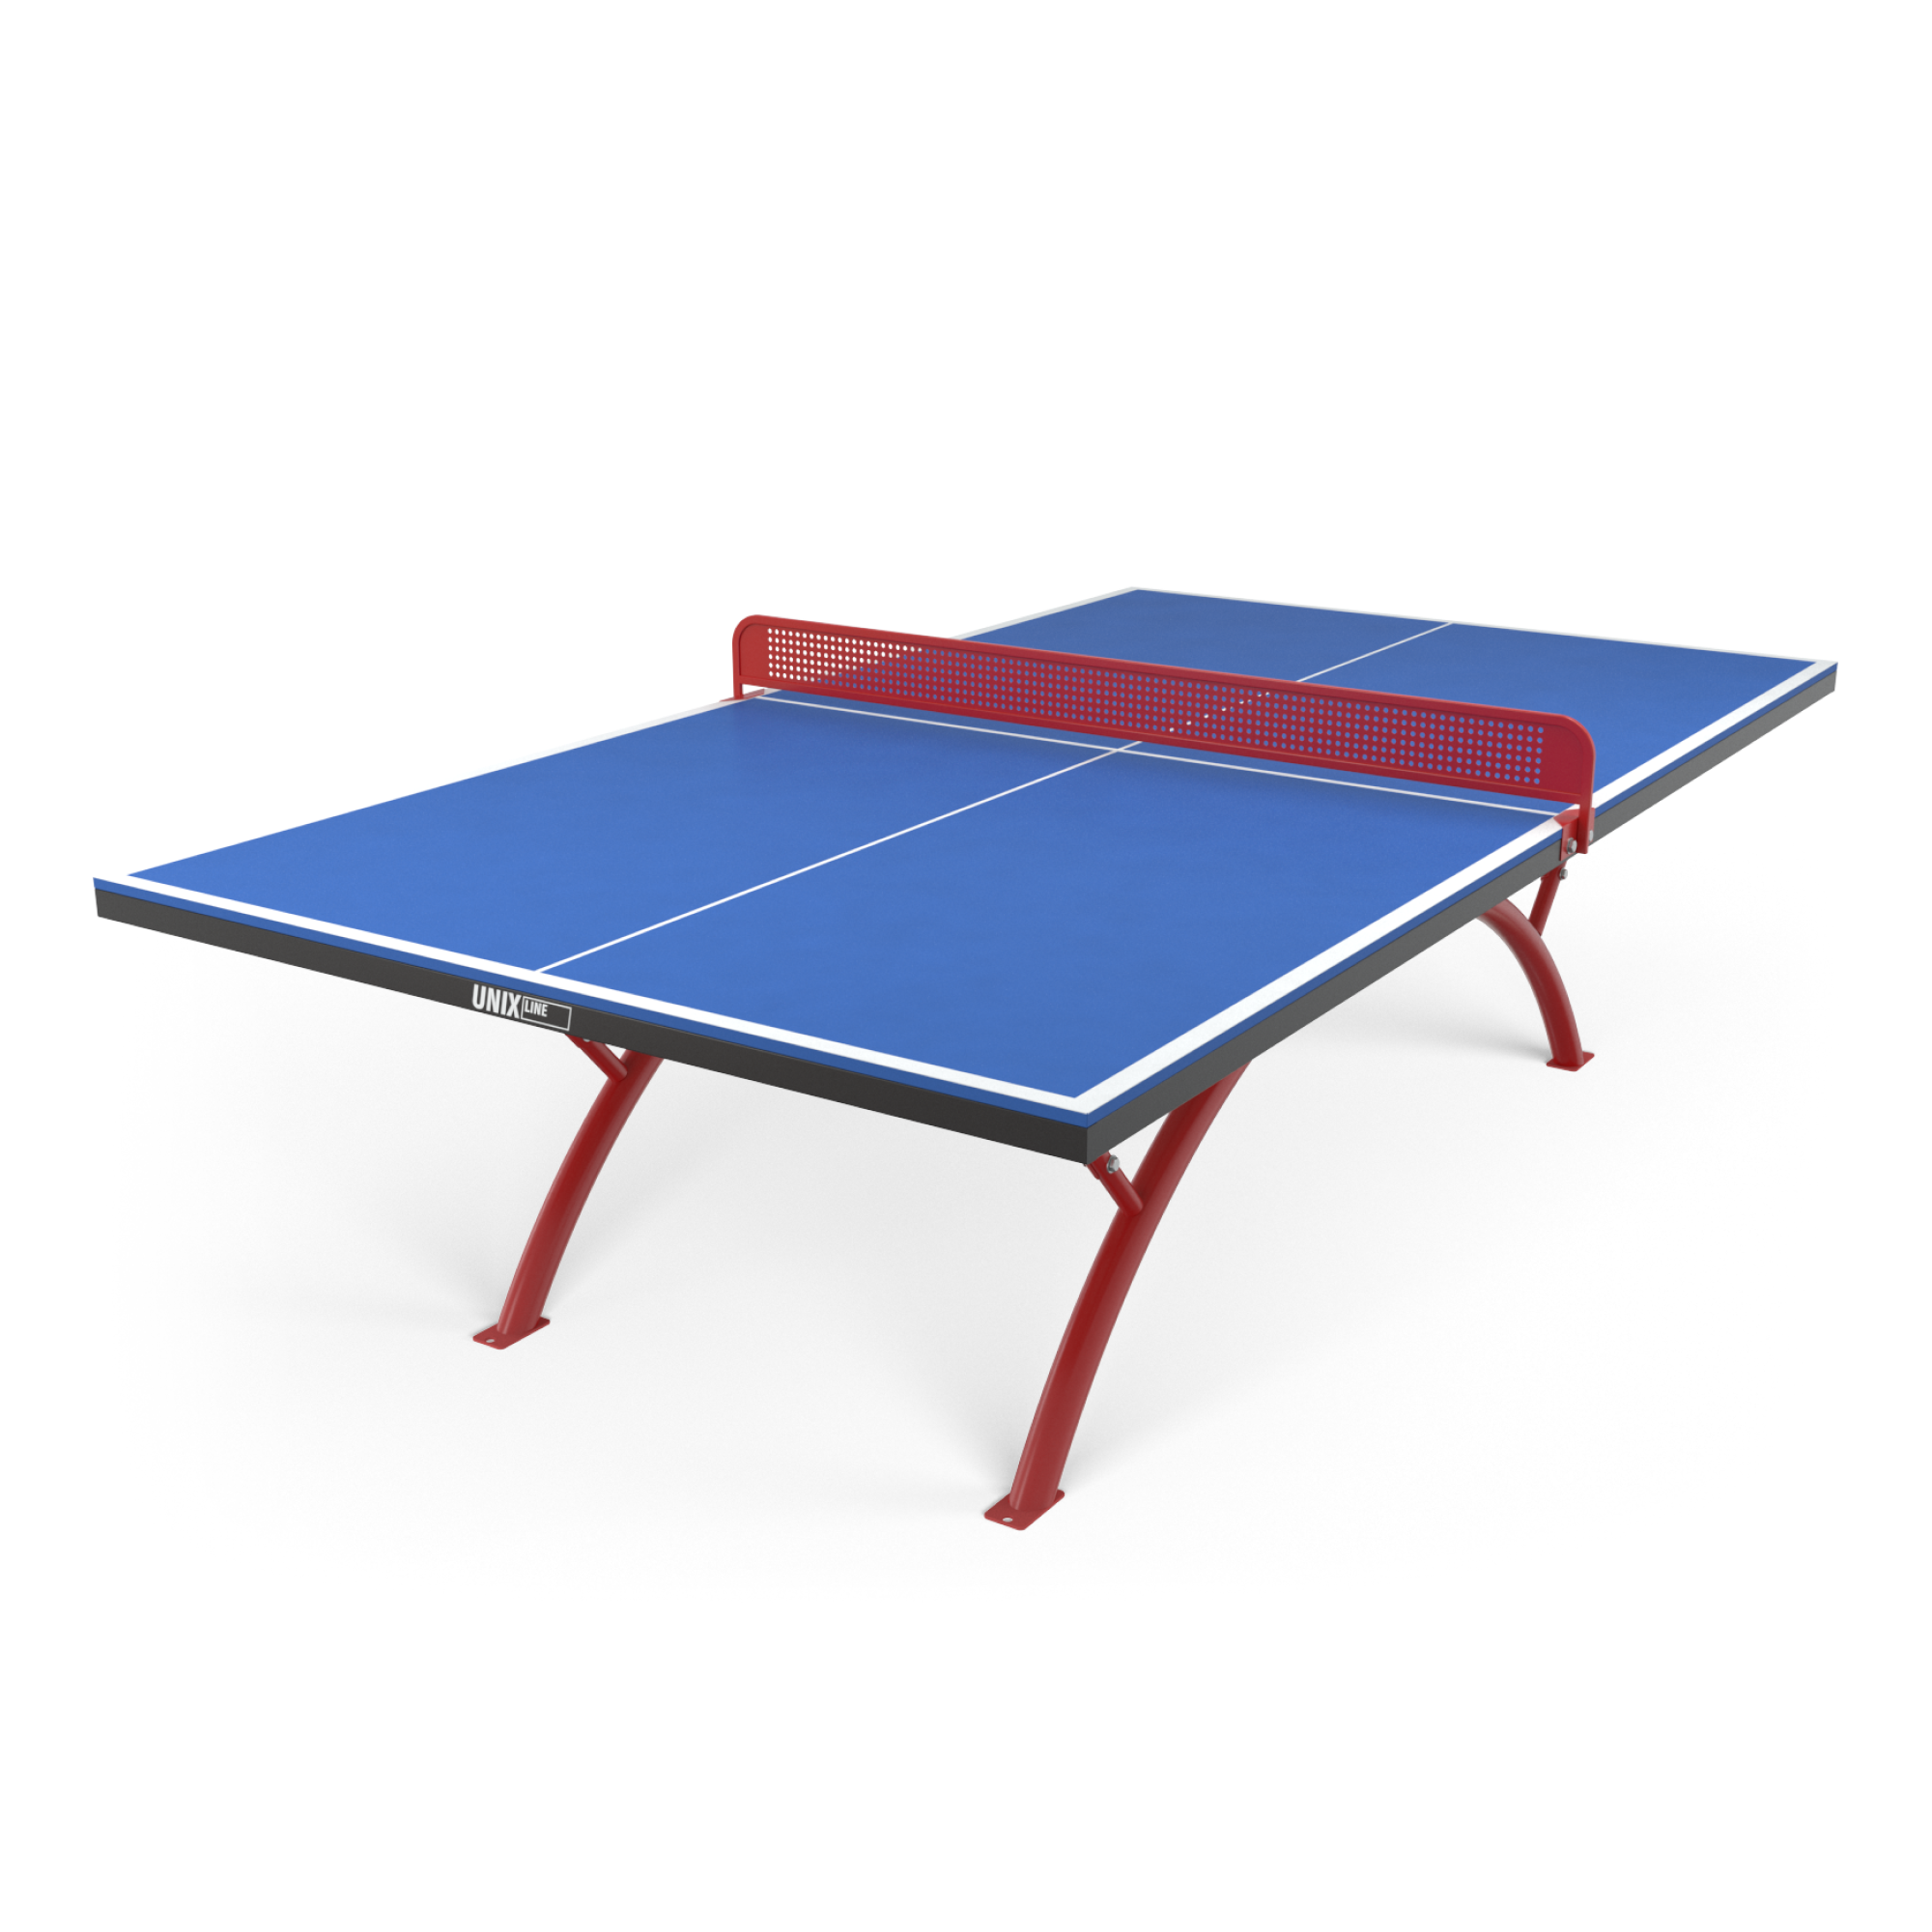 Всепогодные теннисные столы unix line. Теннисный стол Unix line Outdoor - 6 мм. Теннисный стол артикул: 2229.8. Аданат теннисный стол антивандальный. Уличный антивандальный стол для настольного тенниса.